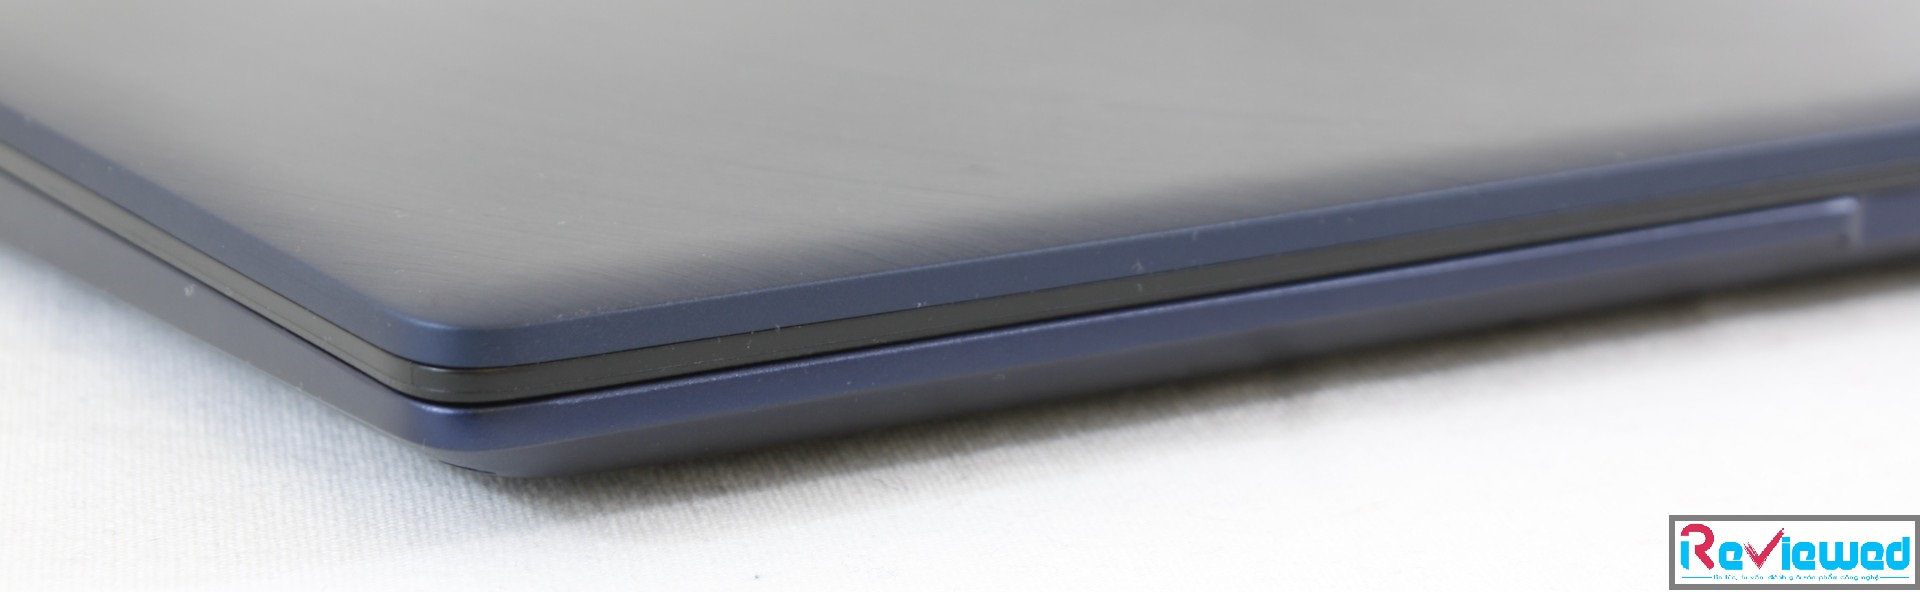 Đánh giá Asus ZenBook 13 UX333FA: Nhỏ hơn XPS 13, Chuyên trang tư vấn laptop